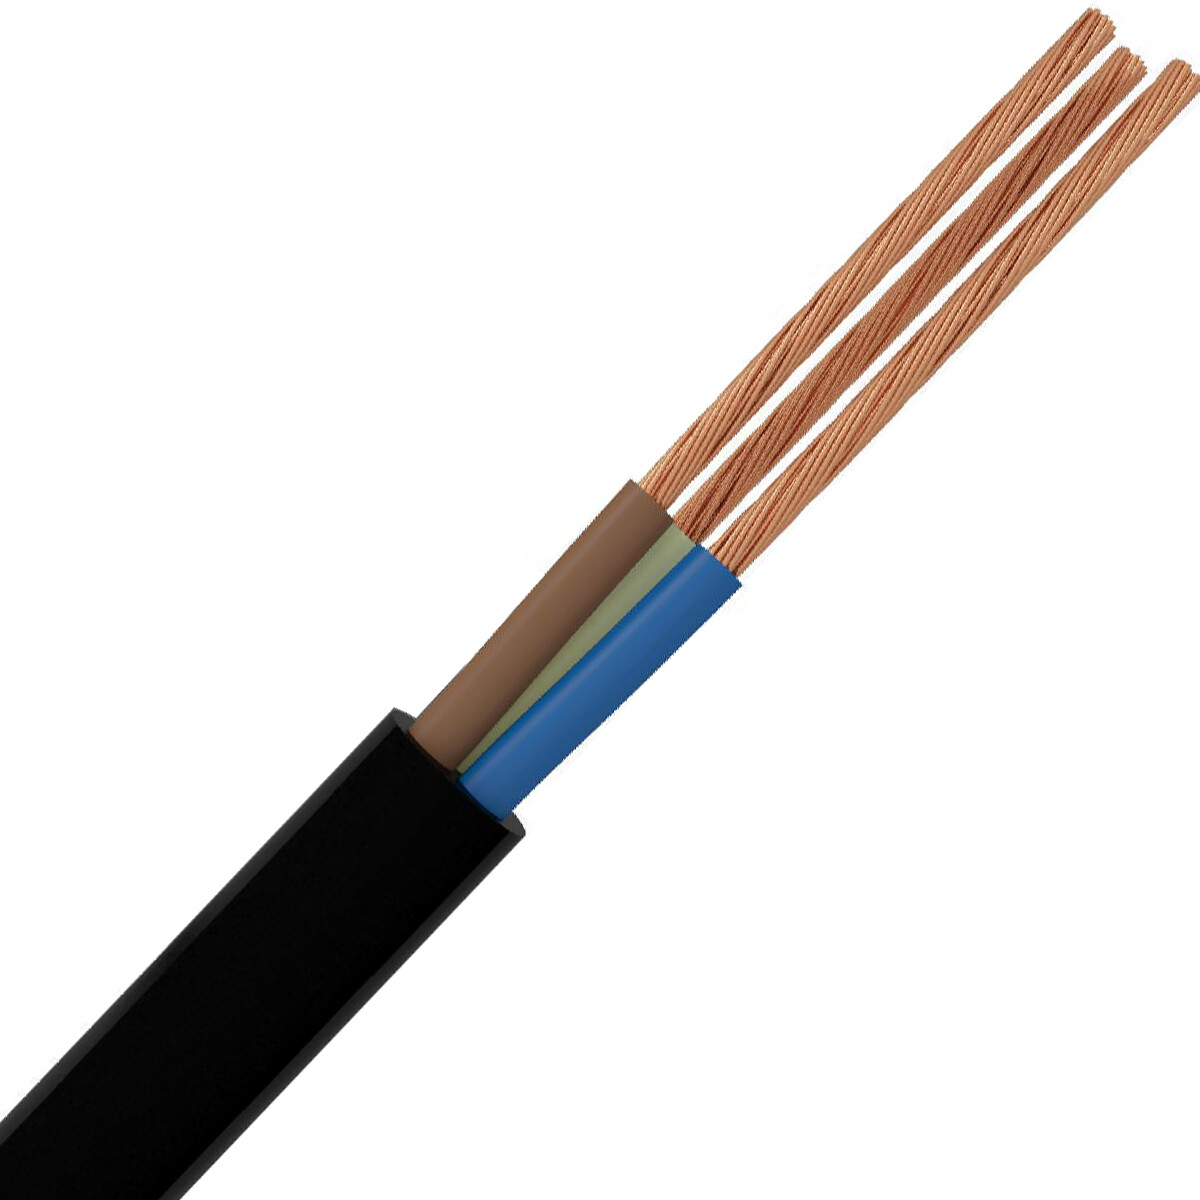 VMVL Kabel - Stroomkabel - 3x1.5mm - 3 Aderig - 20 Meter - H05VV-F - Zwart